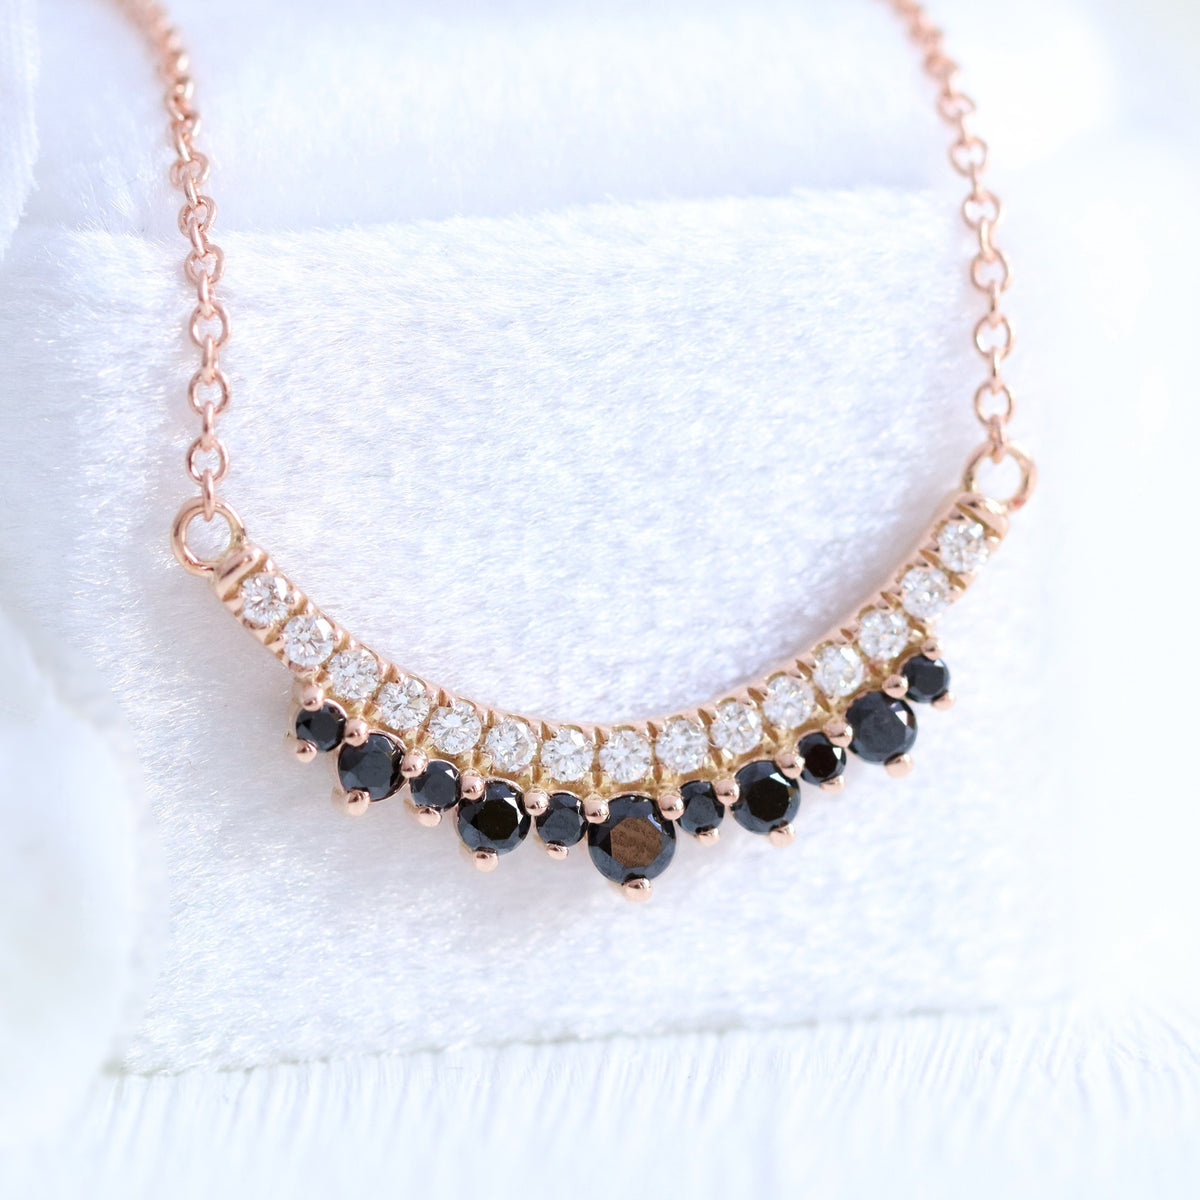 Black and white diamond pendant rose gold crown black diamond necklace la more design jewelry